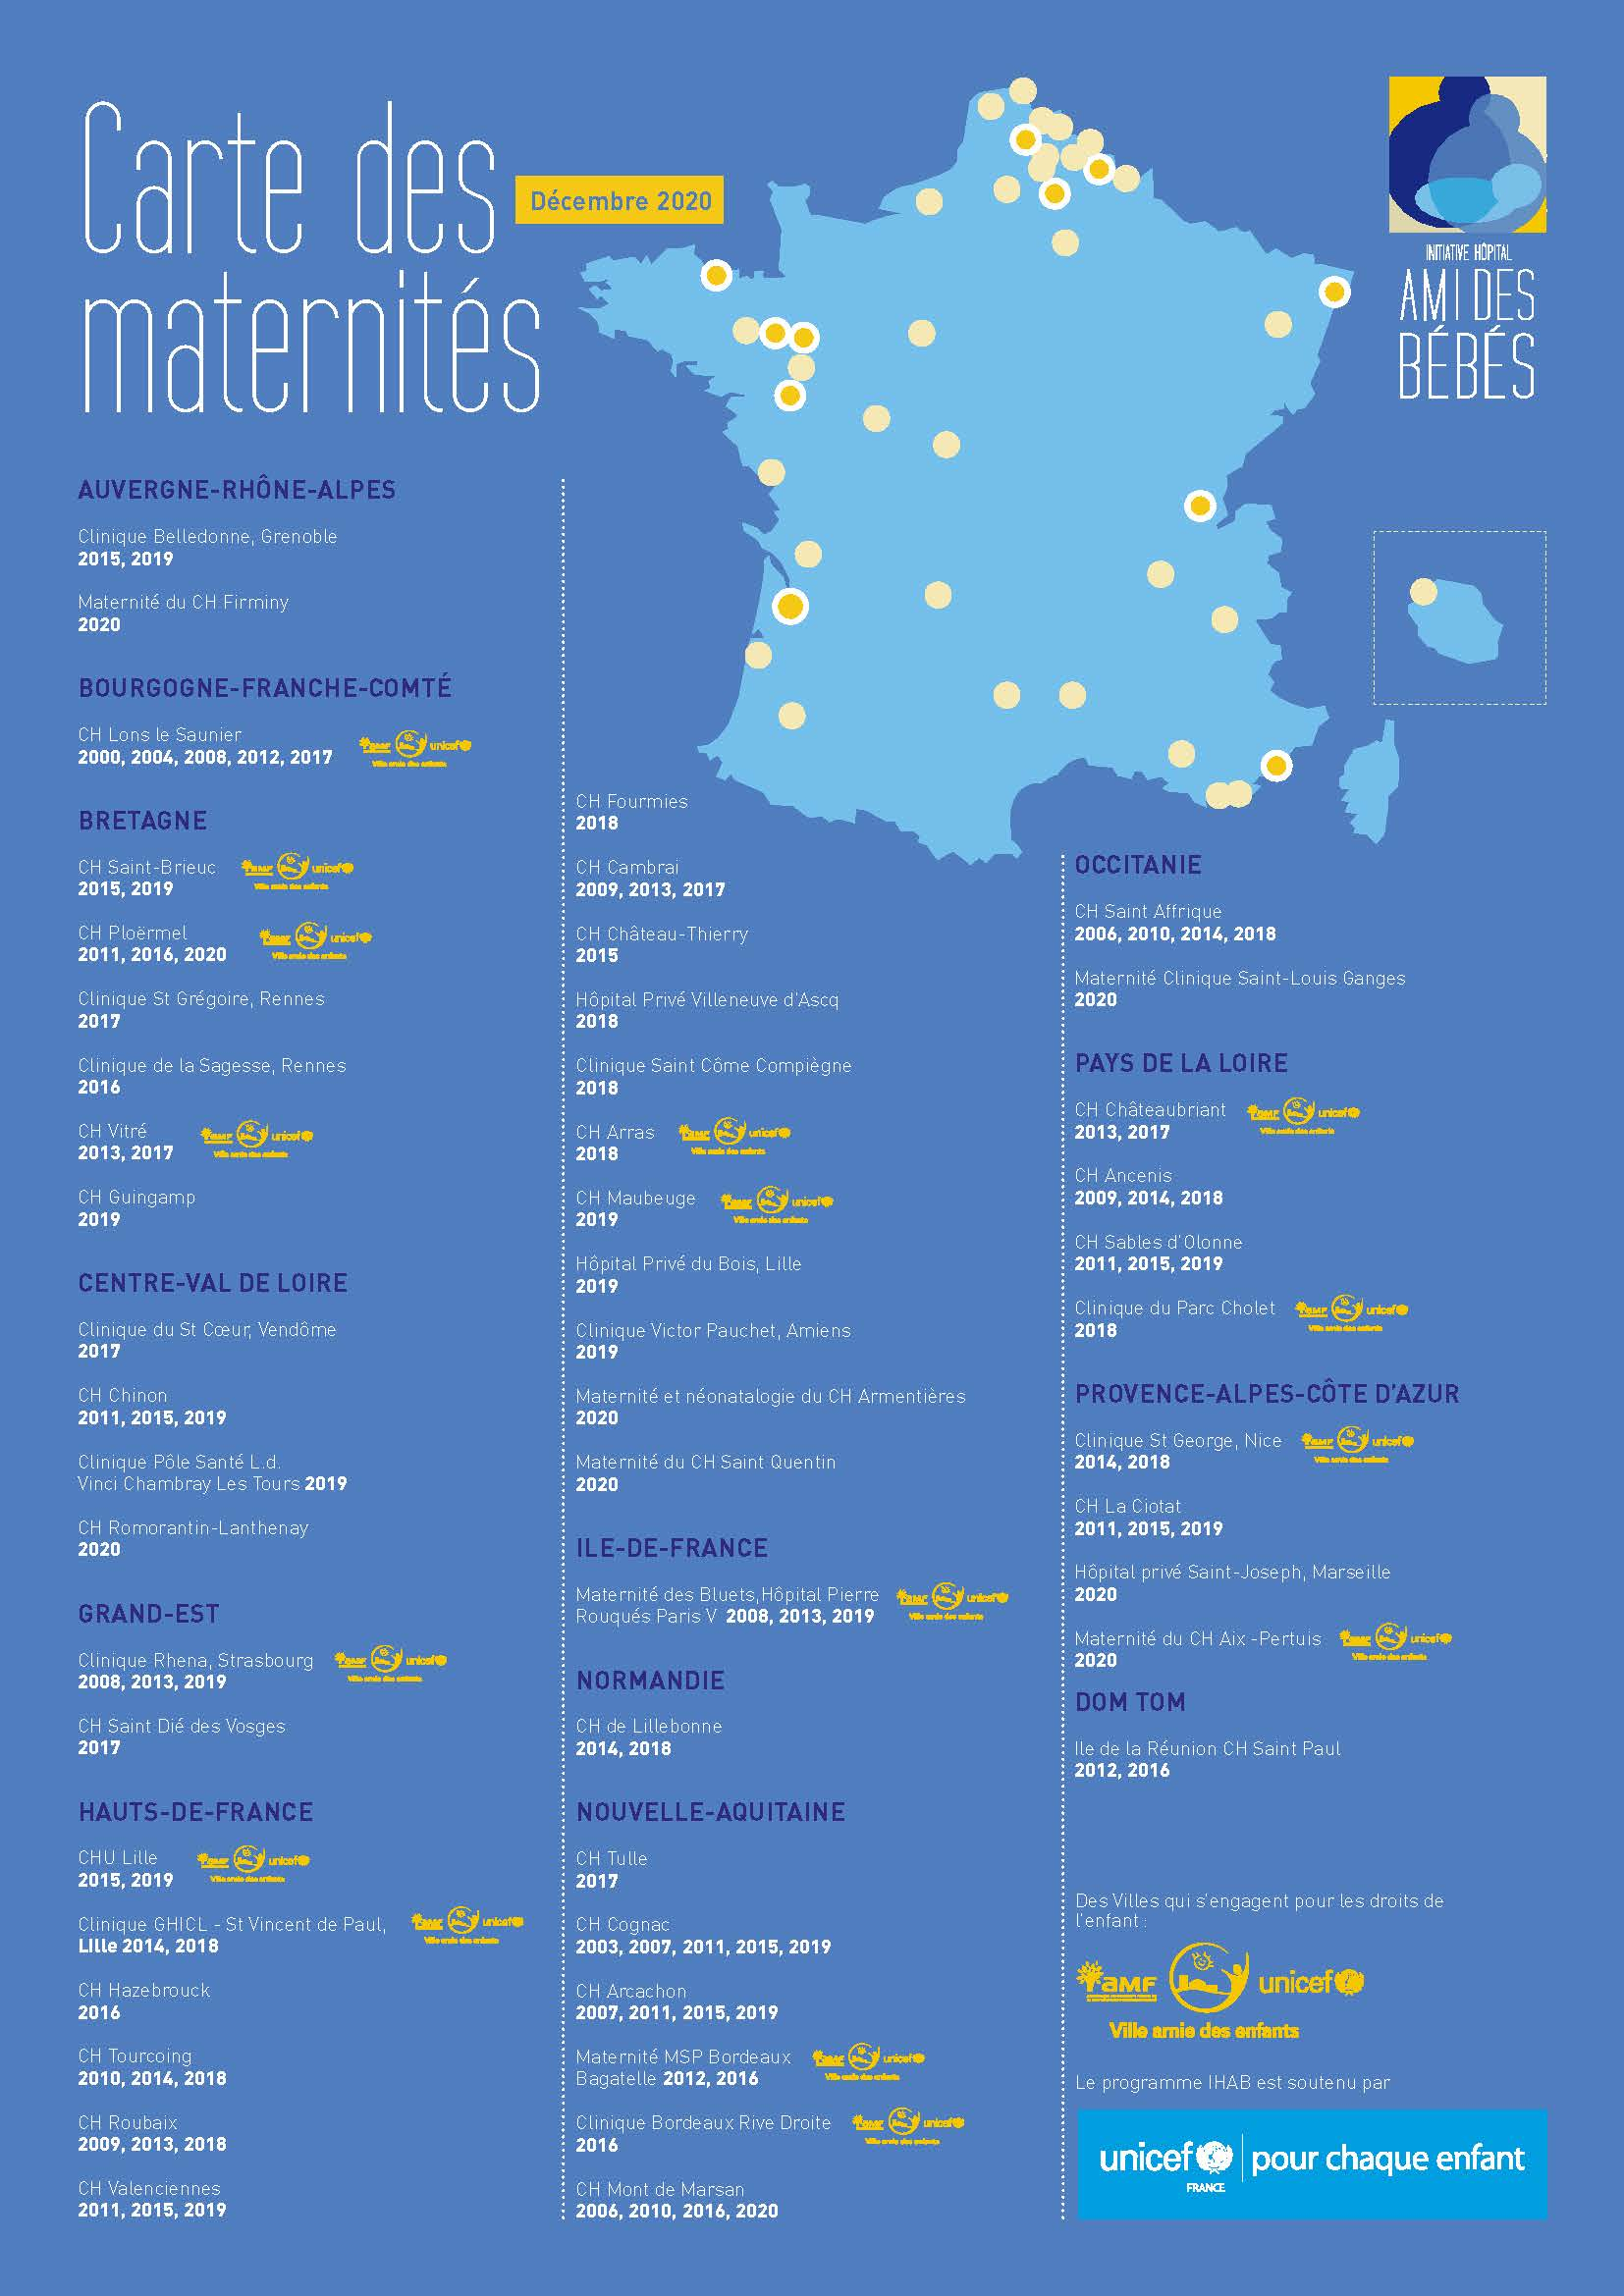 Carte des maternités IHAB 2020 dans les Hauts-de-France